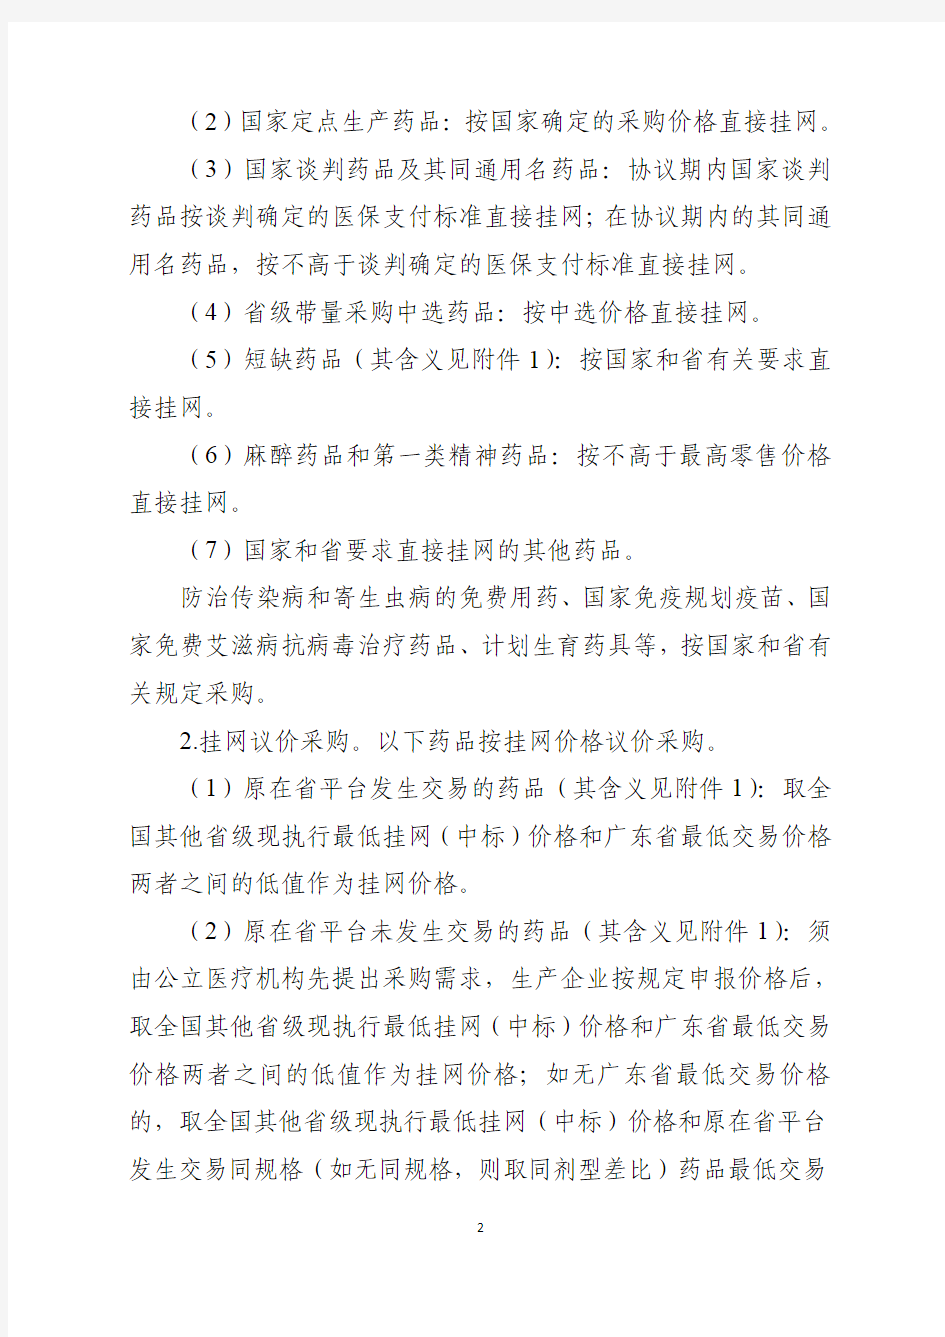 关于广东省第三方药品电子交易平台药品挂网采购工作有关事项的公告(征求意见稿)